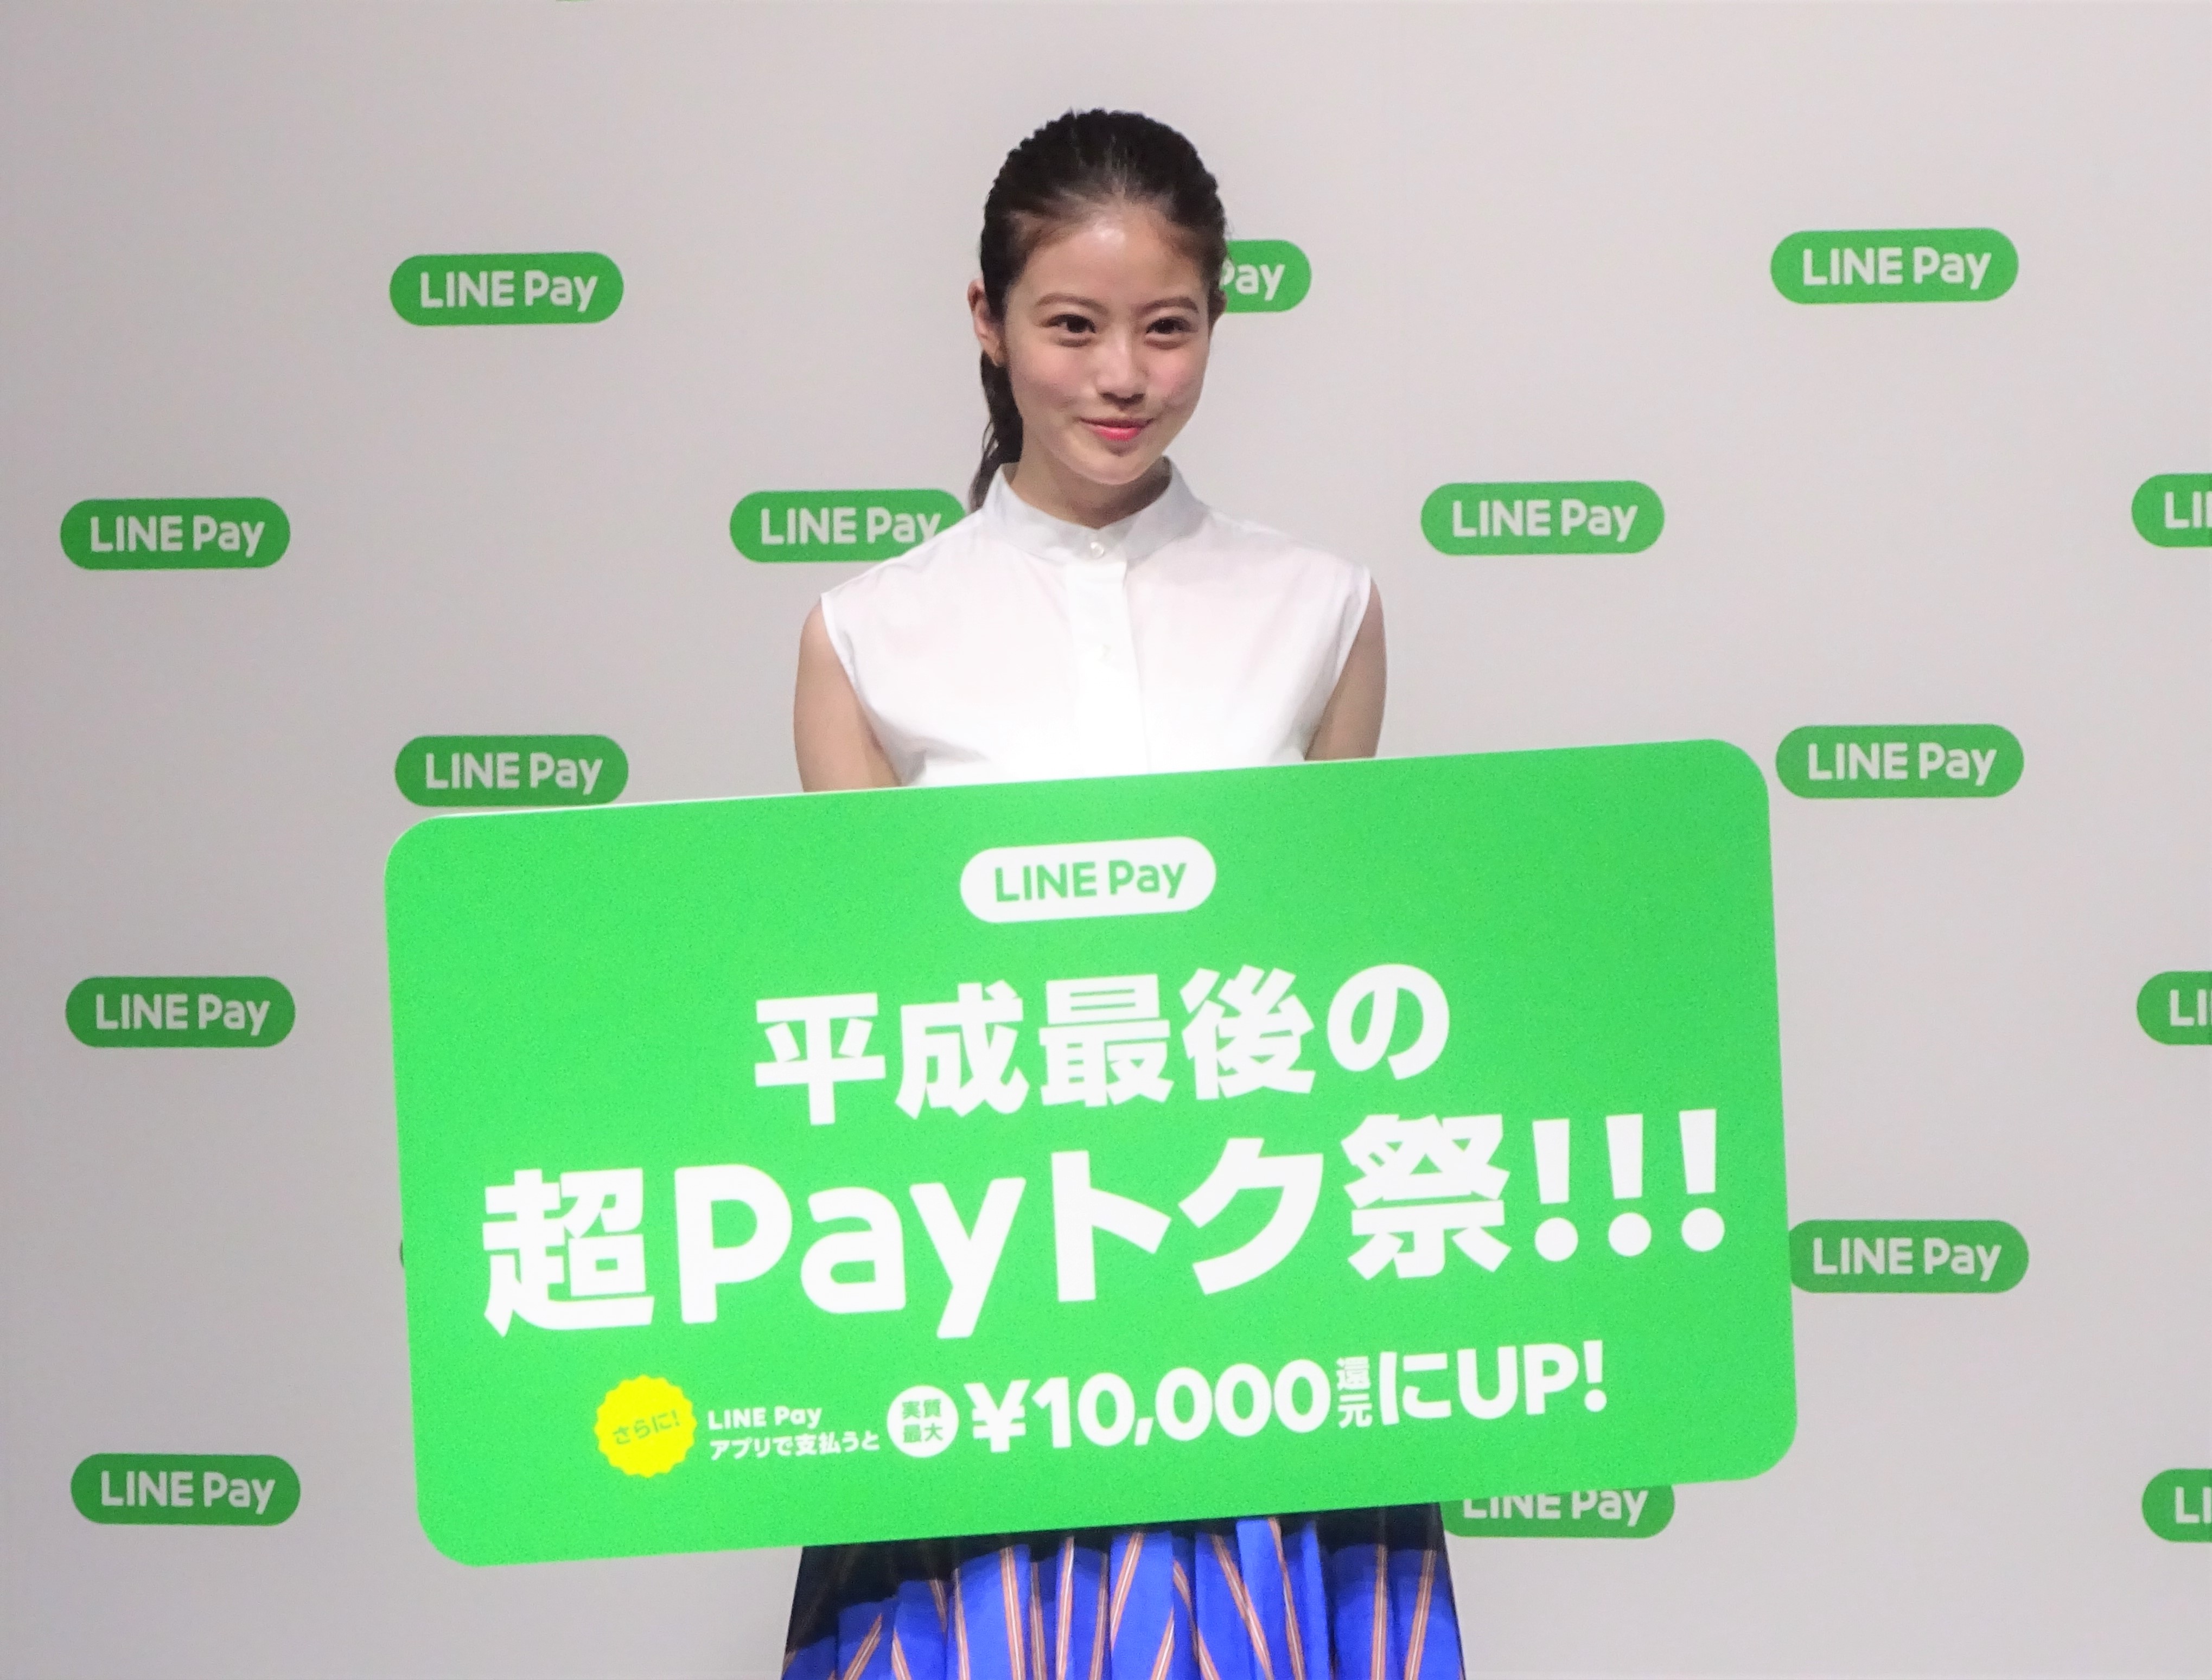 LINE Payは2019年4月、「平成最後の超Payトク祭」キャンペーンを実施すると記者発表した。写真はアンバサダーの今田美桜